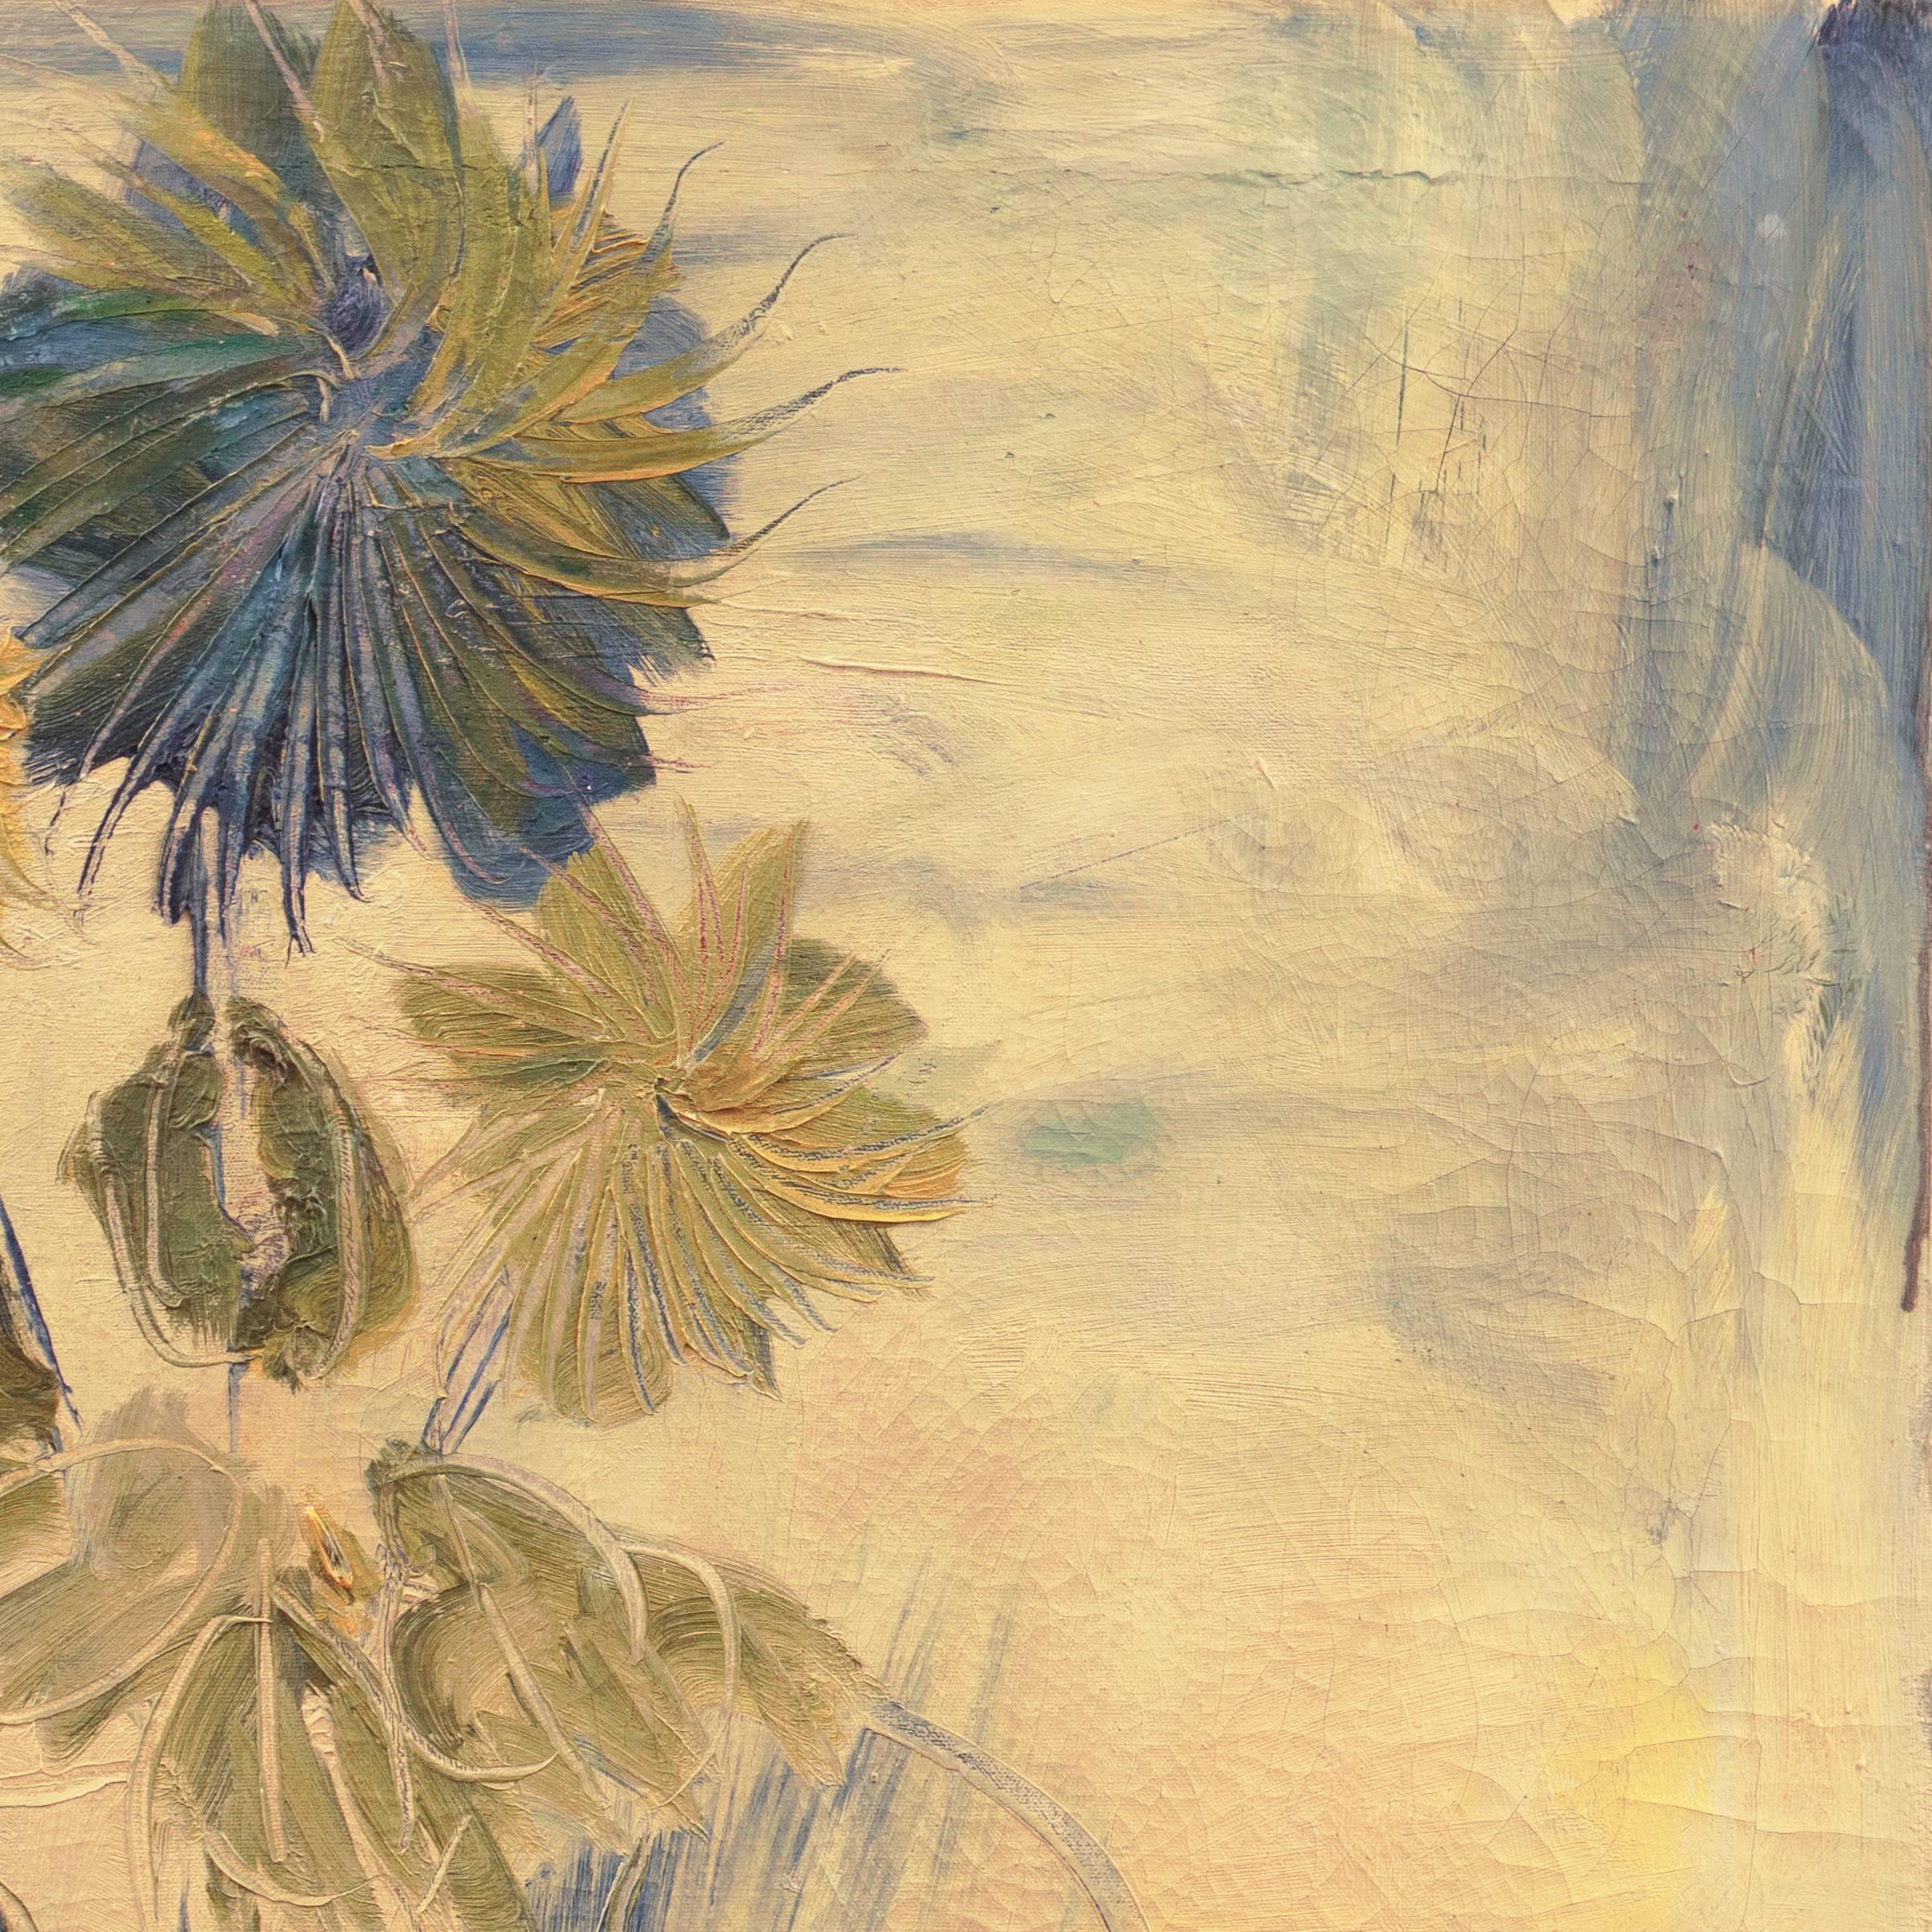 Ein substanzielles Öl aus der Mitte des Jahrhunderts, das Sonnenblumen zeigt, die informell in einer Glasvase arrangiert sind. Ein vollendetes tonalistisches Werk mit zarten Farben und lebhaften, kalligrafischen Pinselstrichen, die den Einfluss von